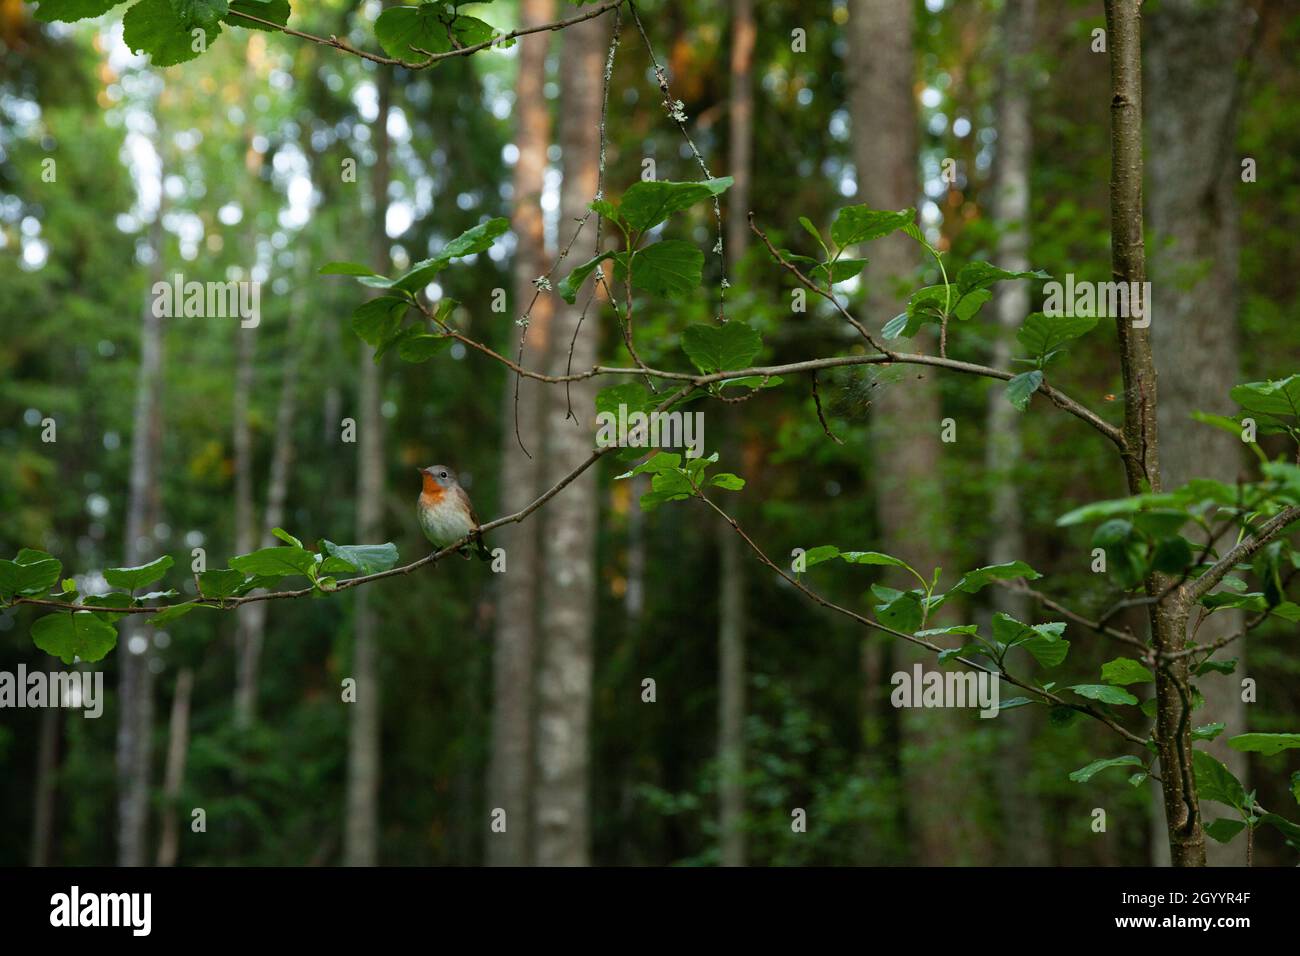 Kleiner roter Fliegenschnäpper, Ficedula parva hoch oben in einer üppigen Umgebung. Erschossen in einem altgewachsenen estnischen Wald. Stockfoto